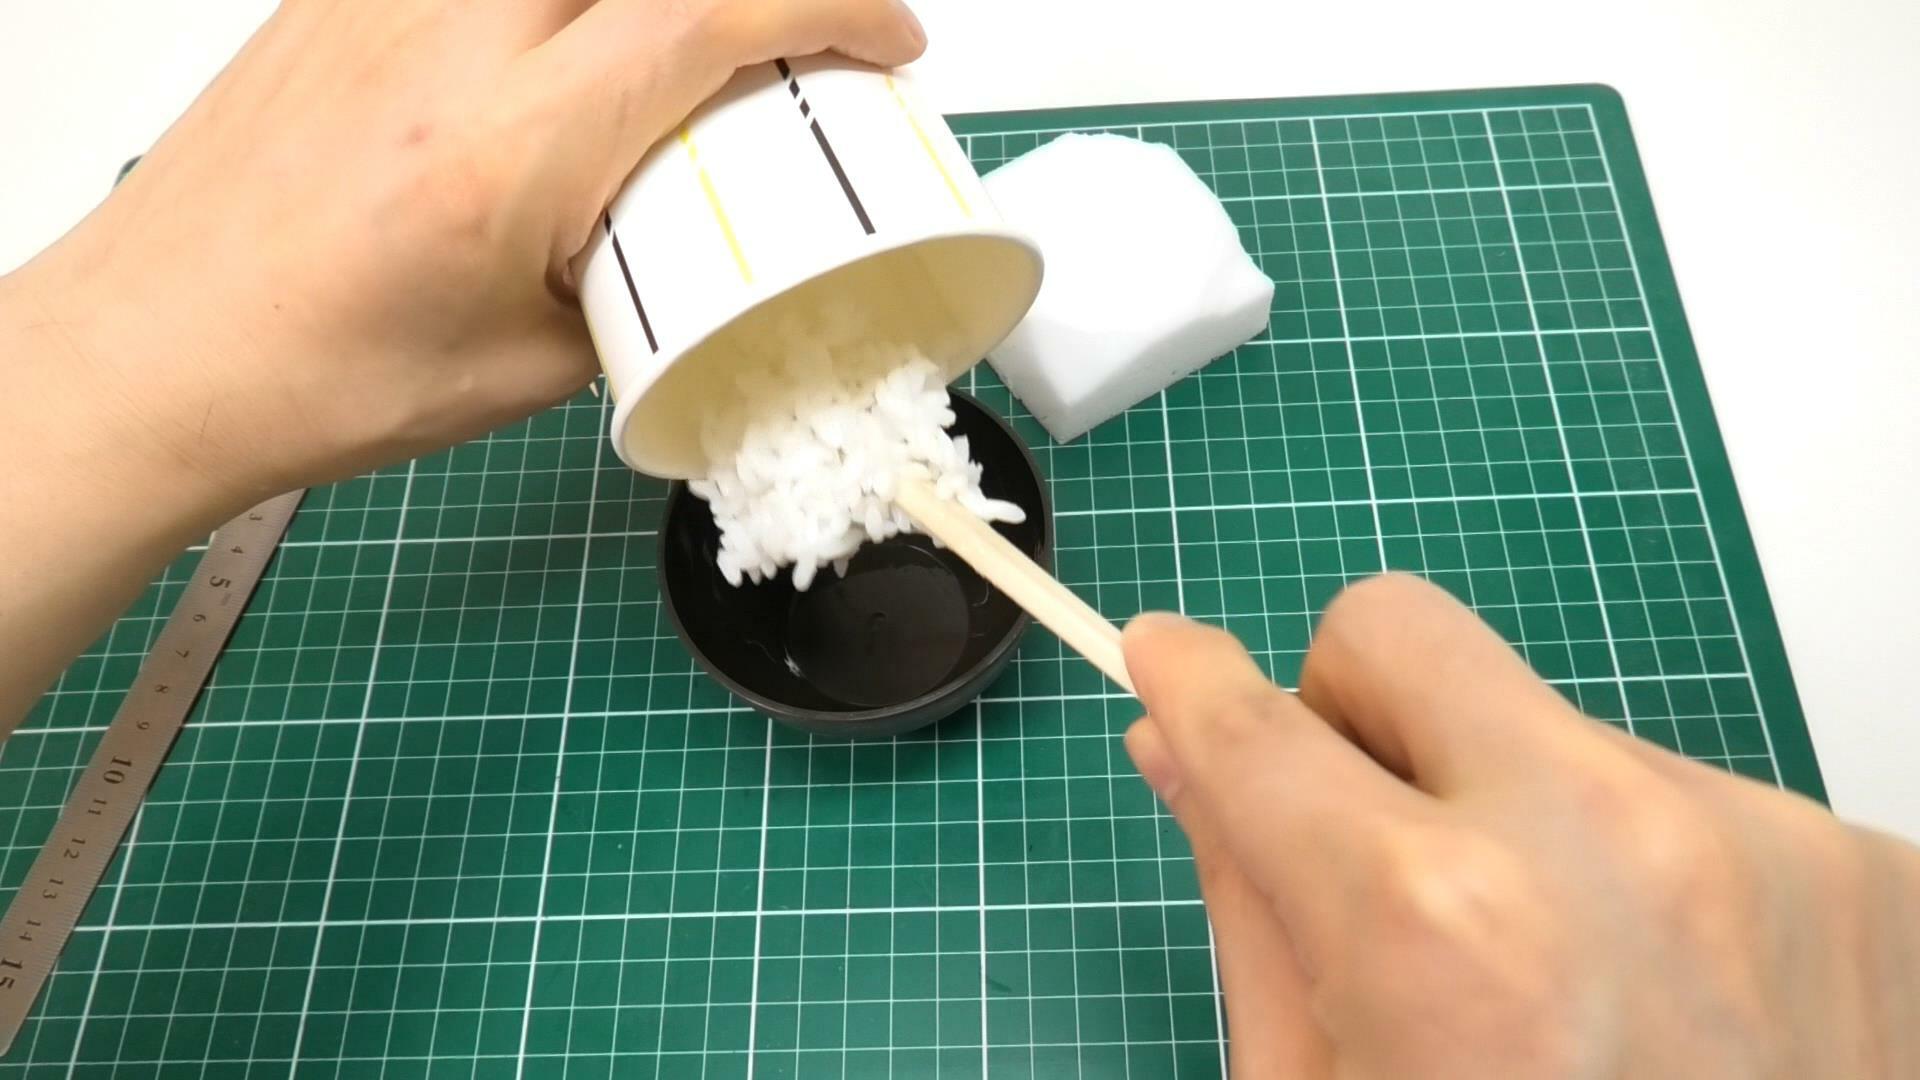 接着剤を付けたそっくり米をお茶碗に入れて型どり。お茶碗には離型剤が塗ってあります